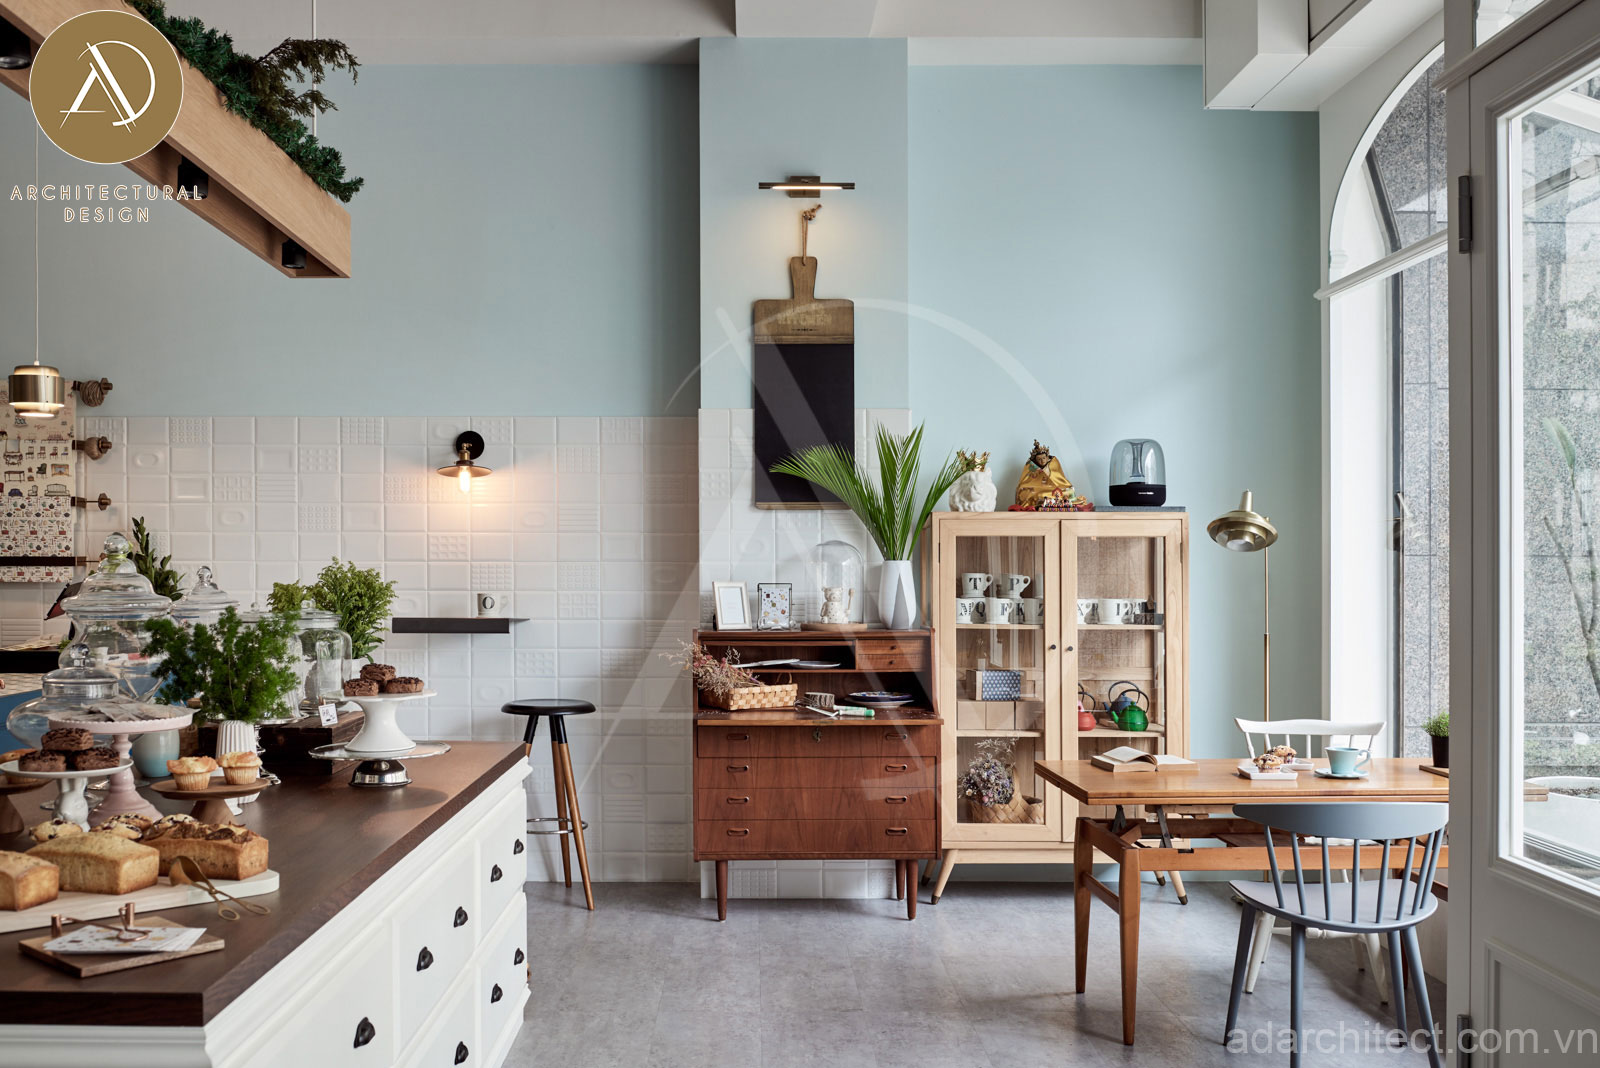 Tiệm bánh đẹp: trang trí tủ gỗ cổ điển giúp không gian thêm tinh tế